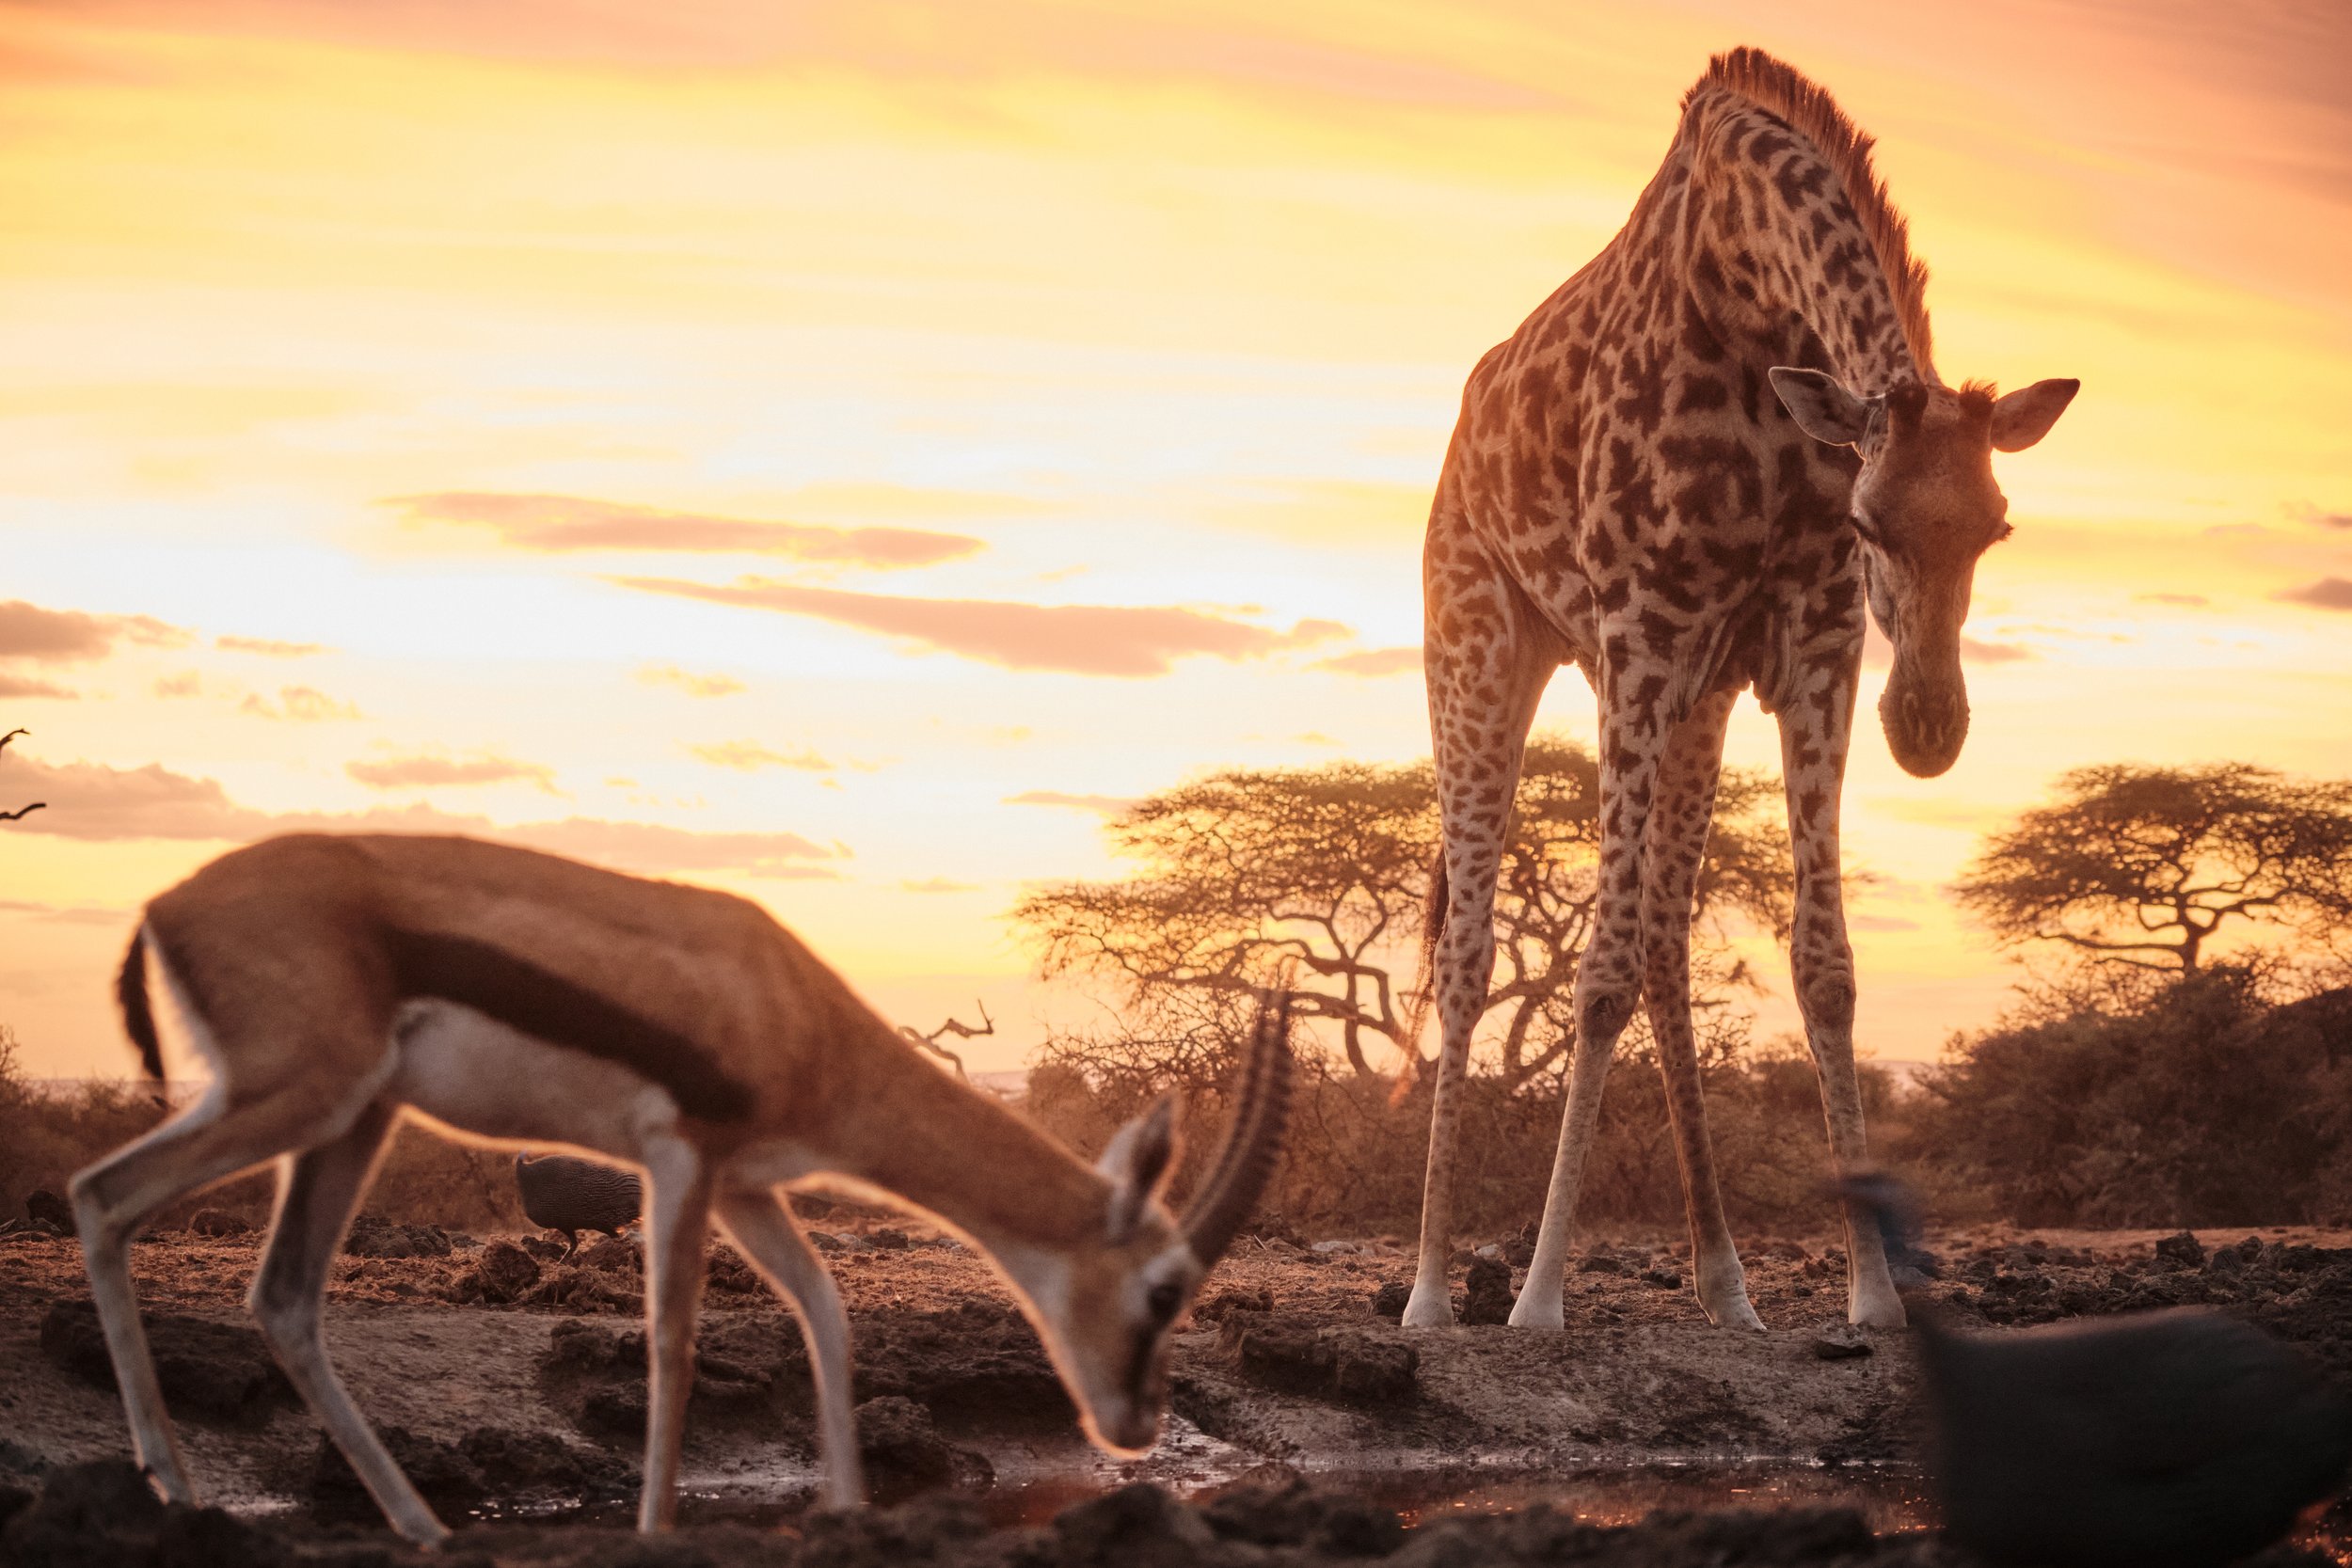 GreatPlains-Kenya-olDonyoLodge-Wildlife-AW57.jpeg